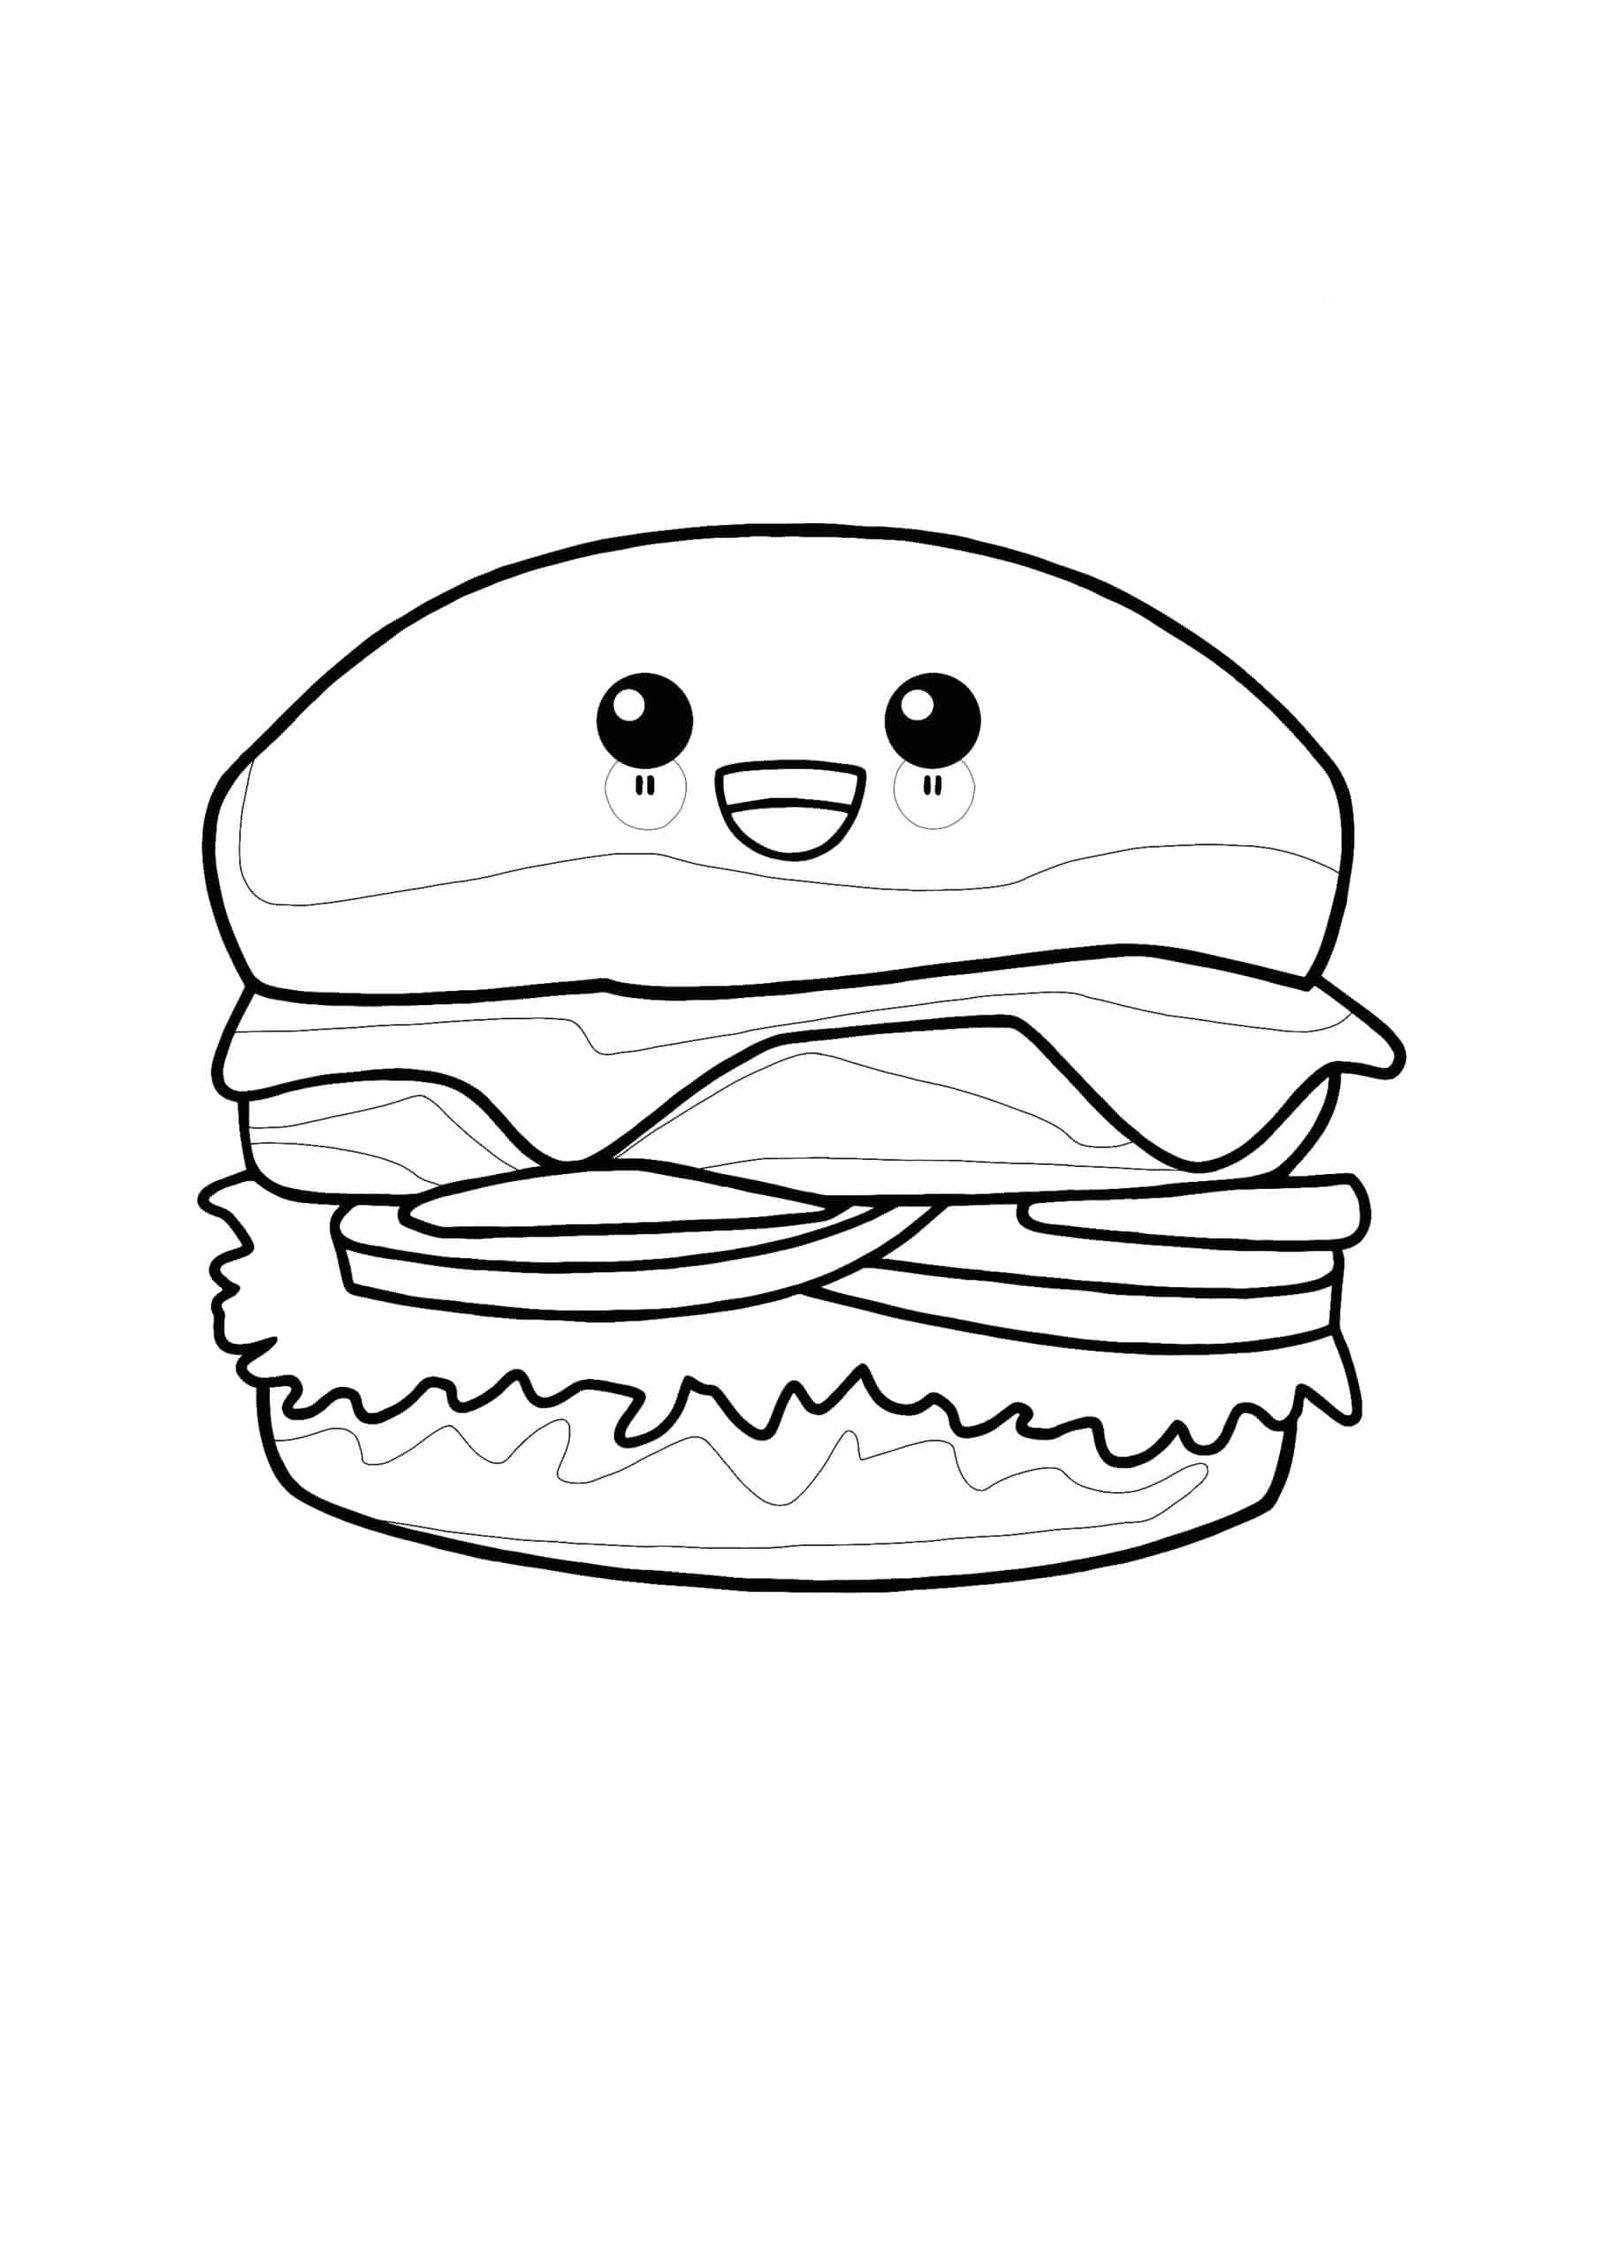 Kawaii Hamburger coloring page